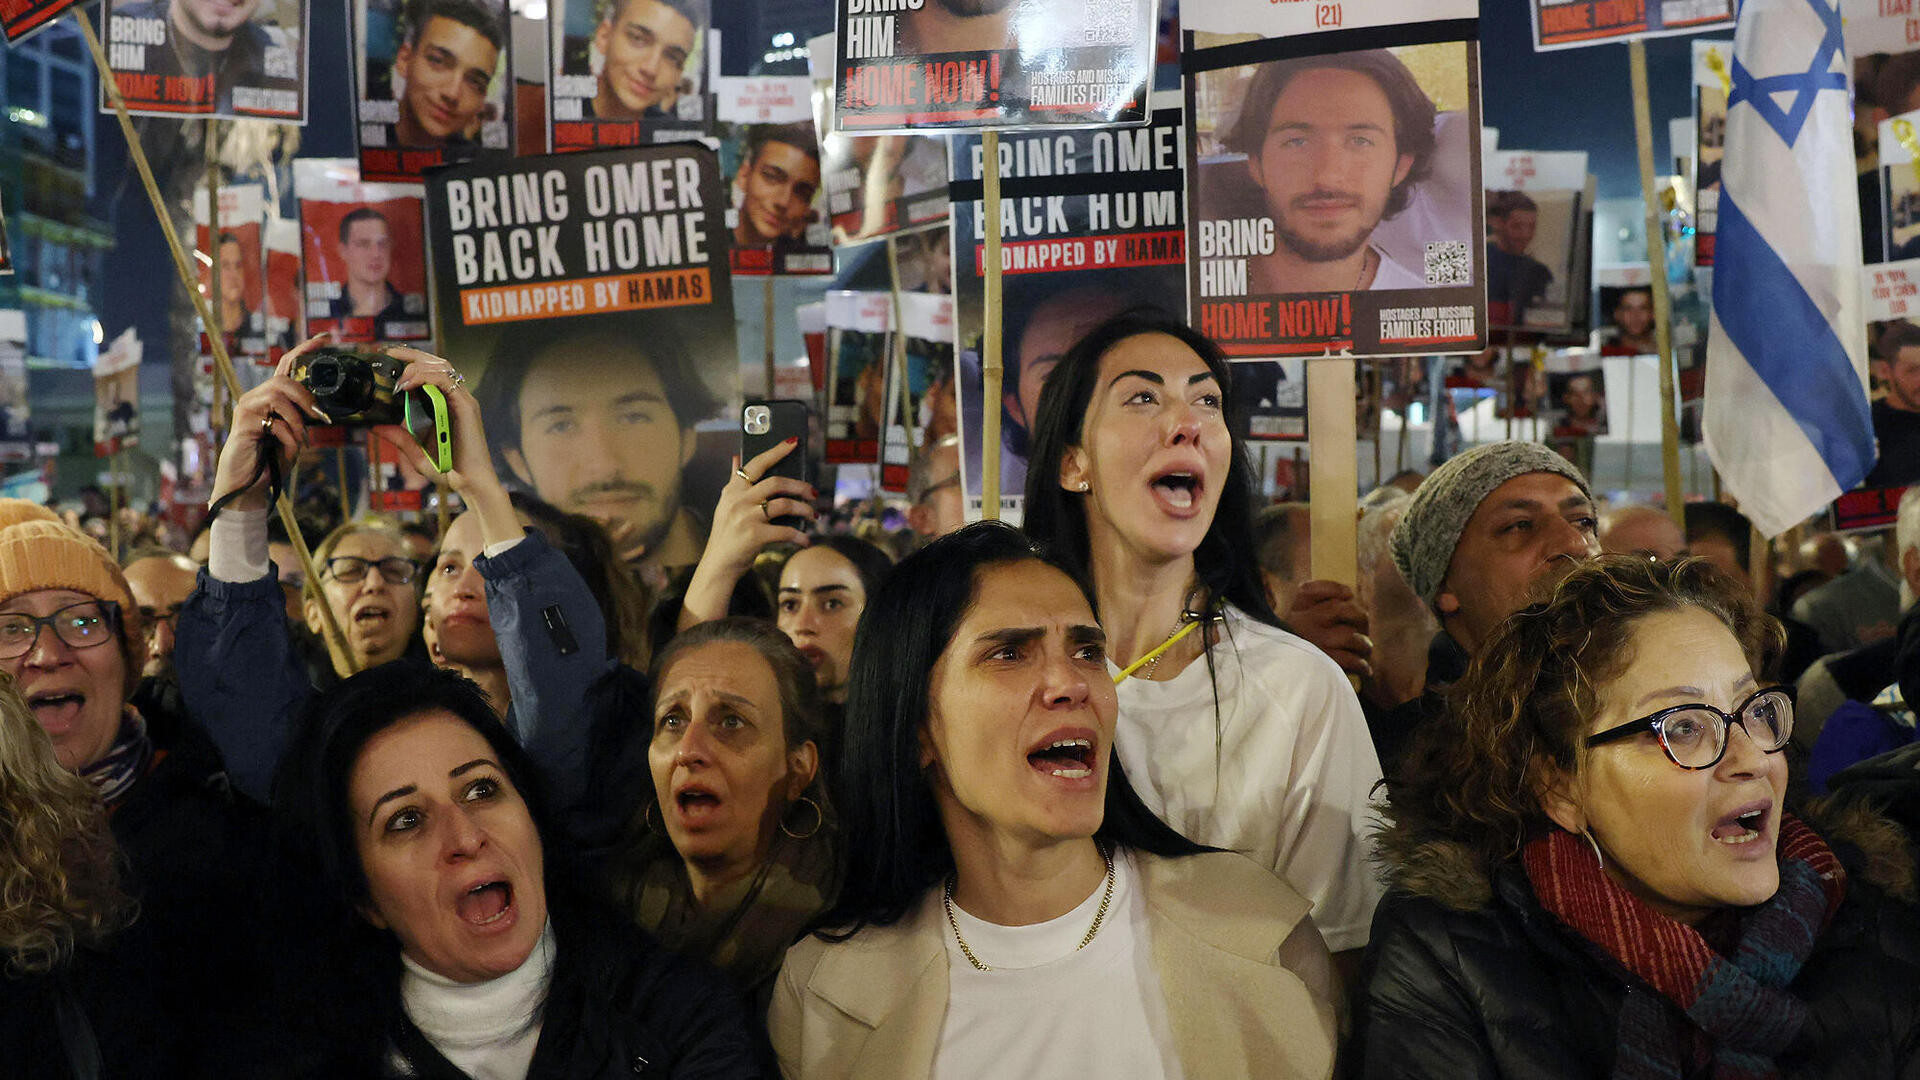 הפגנה 24 שעות 100 ימים חטופים שבי חמאס כיכר החטופים תל אביב חטופים מלחמת עזה